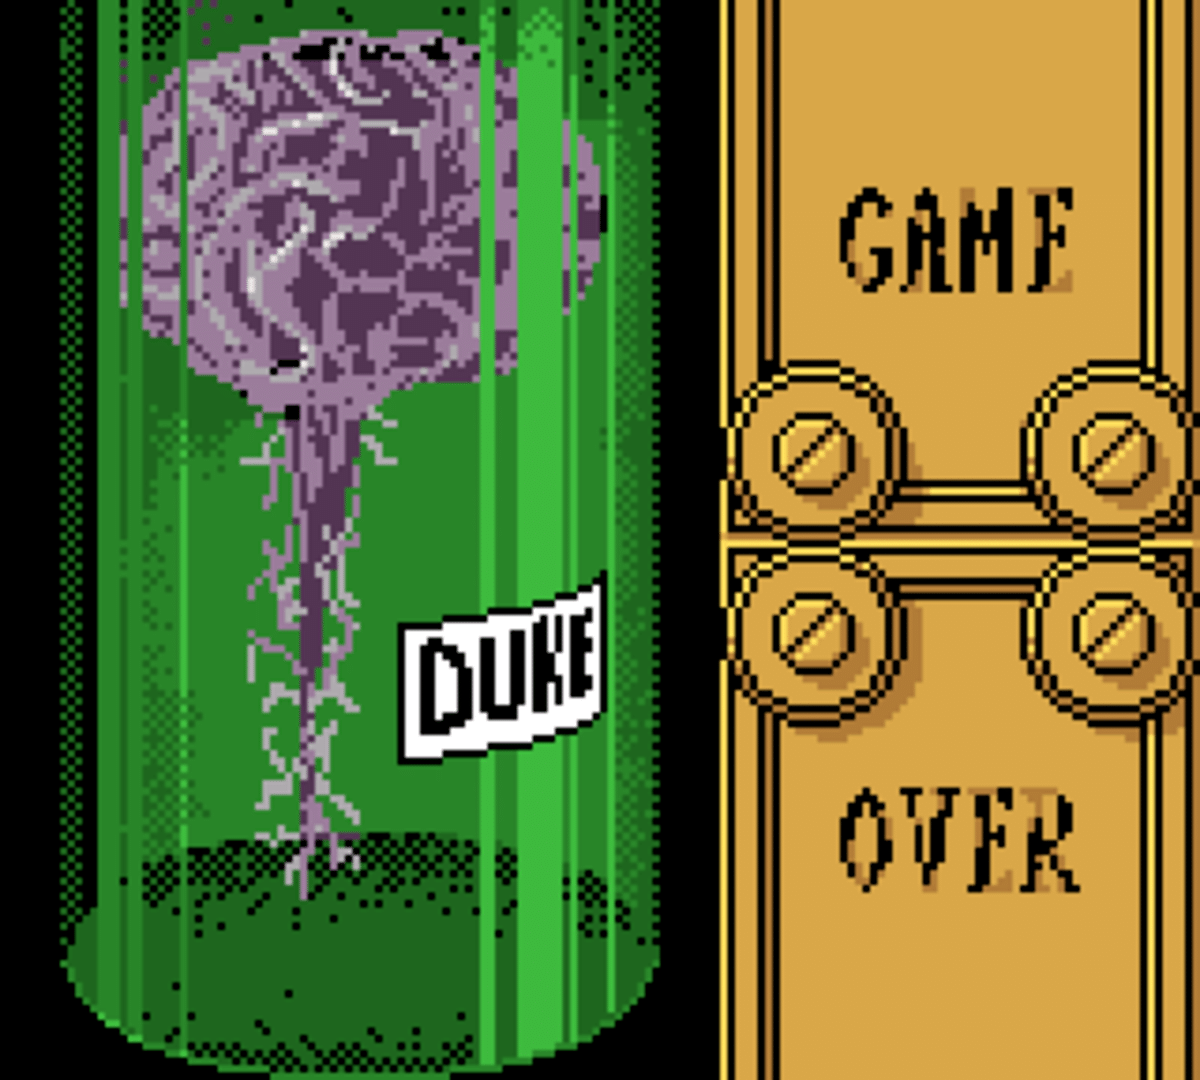 Duke Nukem screenshot